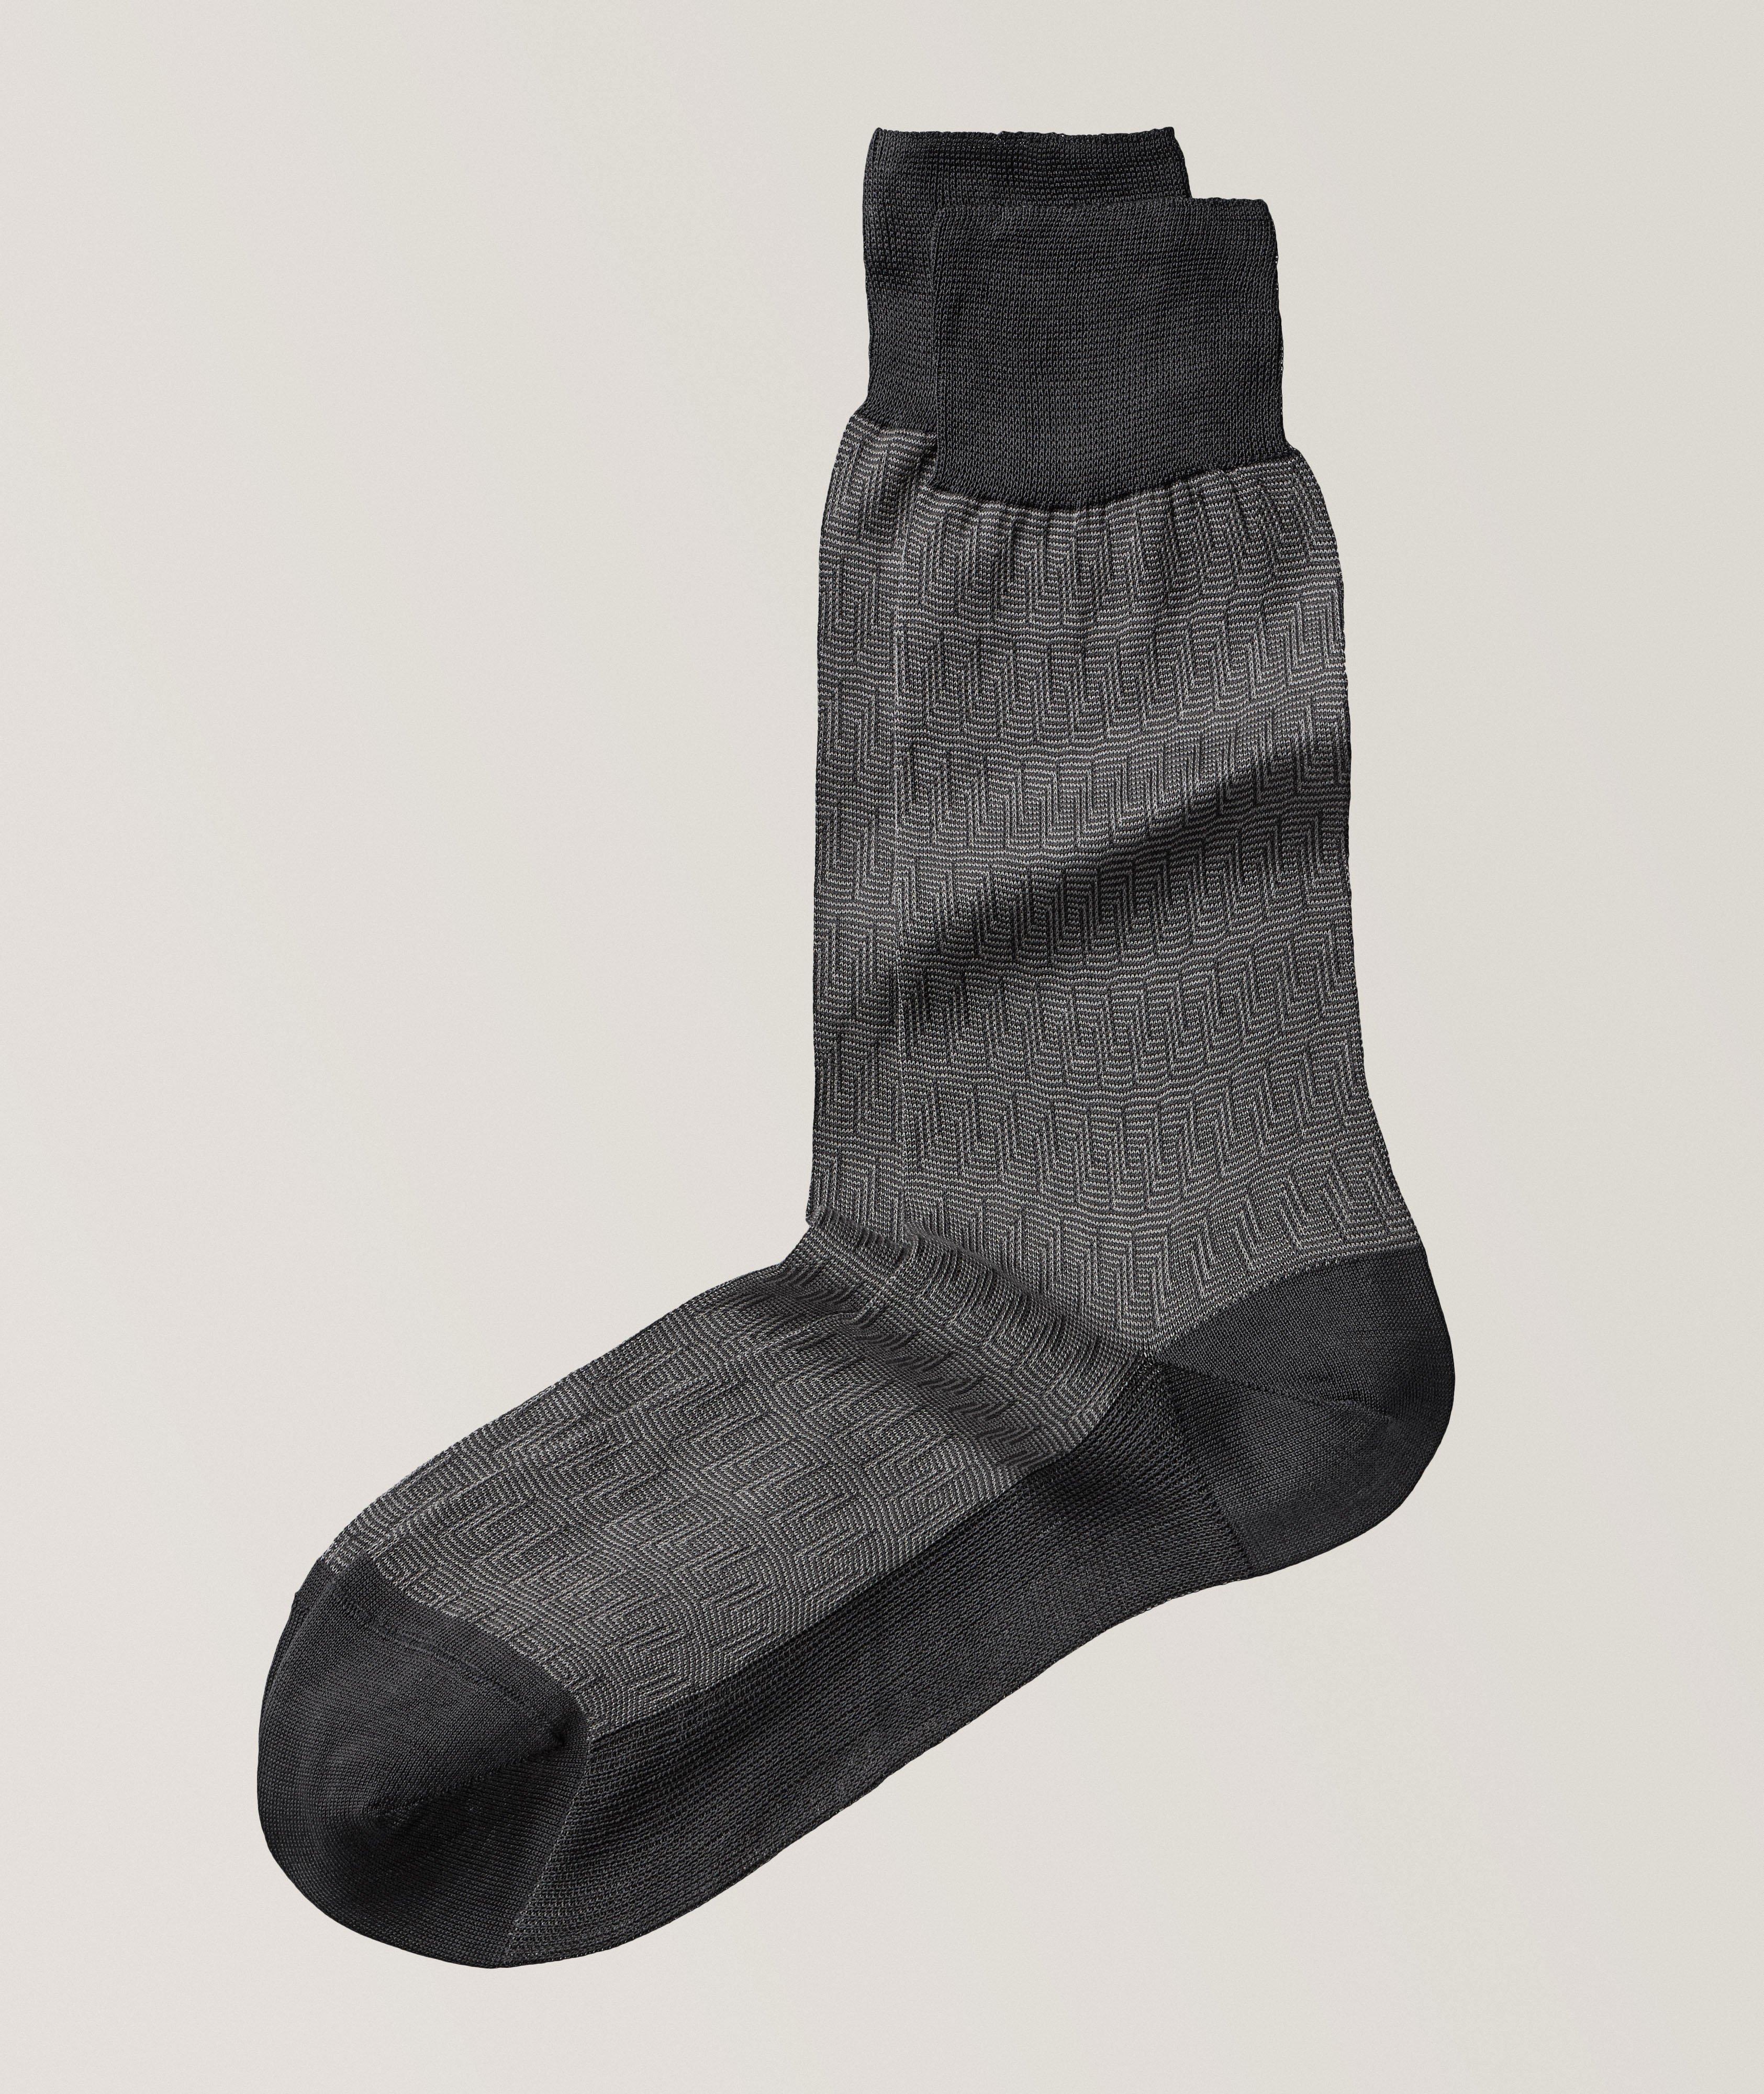 Colour-Block Dress Socks image 0